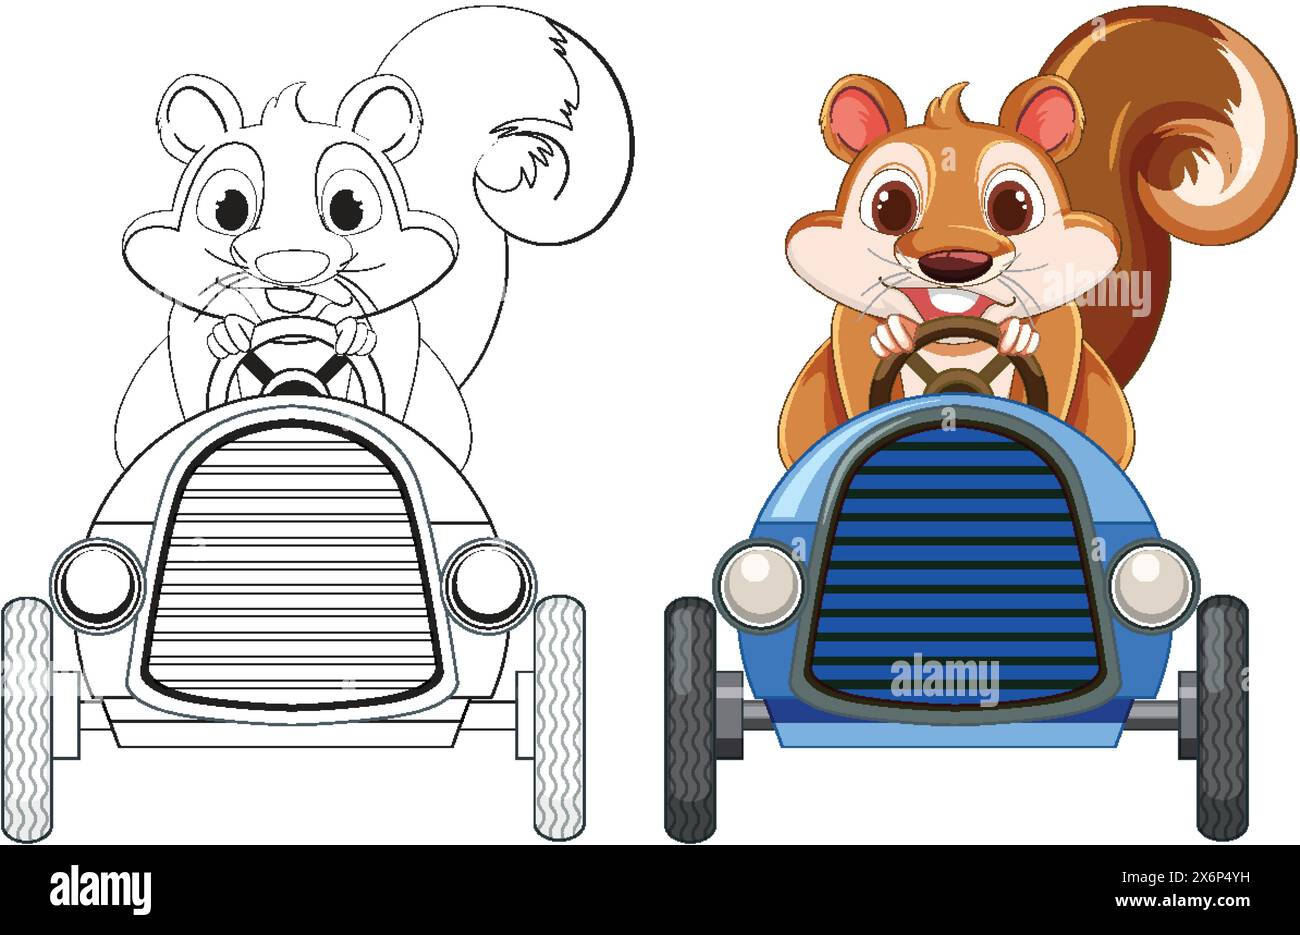 Zwei Eichhörnchen in Autos, die Freude und Spannung zeigen Stock Vektor